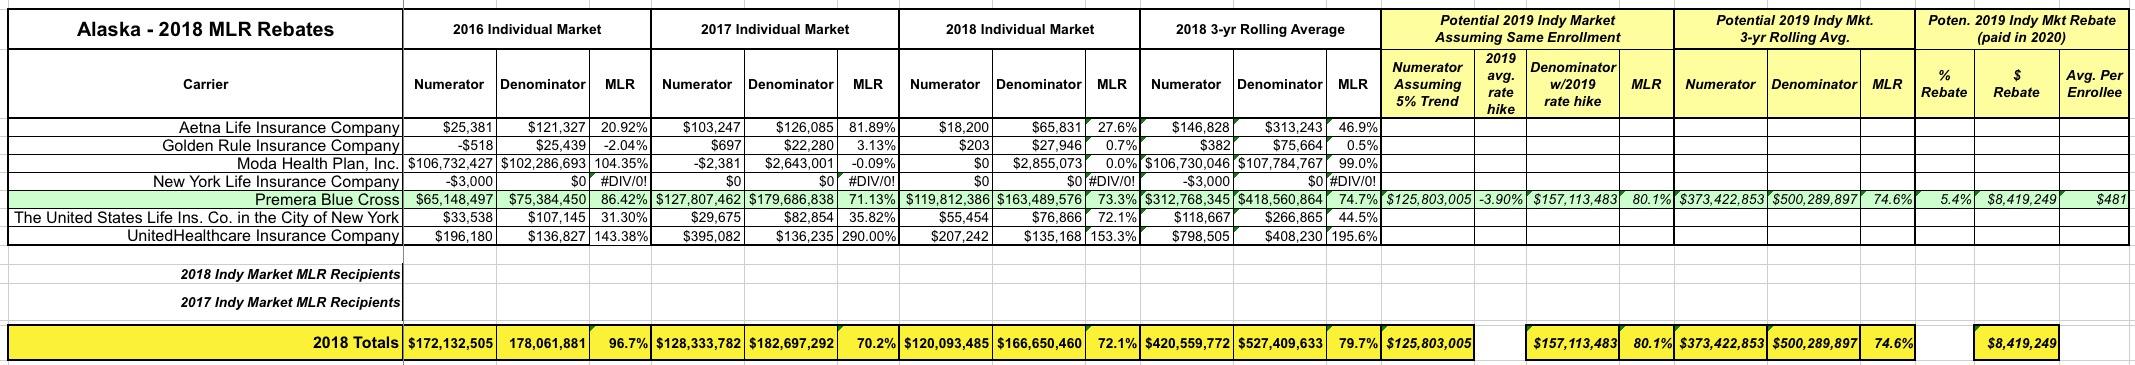 exclusive-alaska-2018-mlr-rebate-payments-potential-2019-rebates